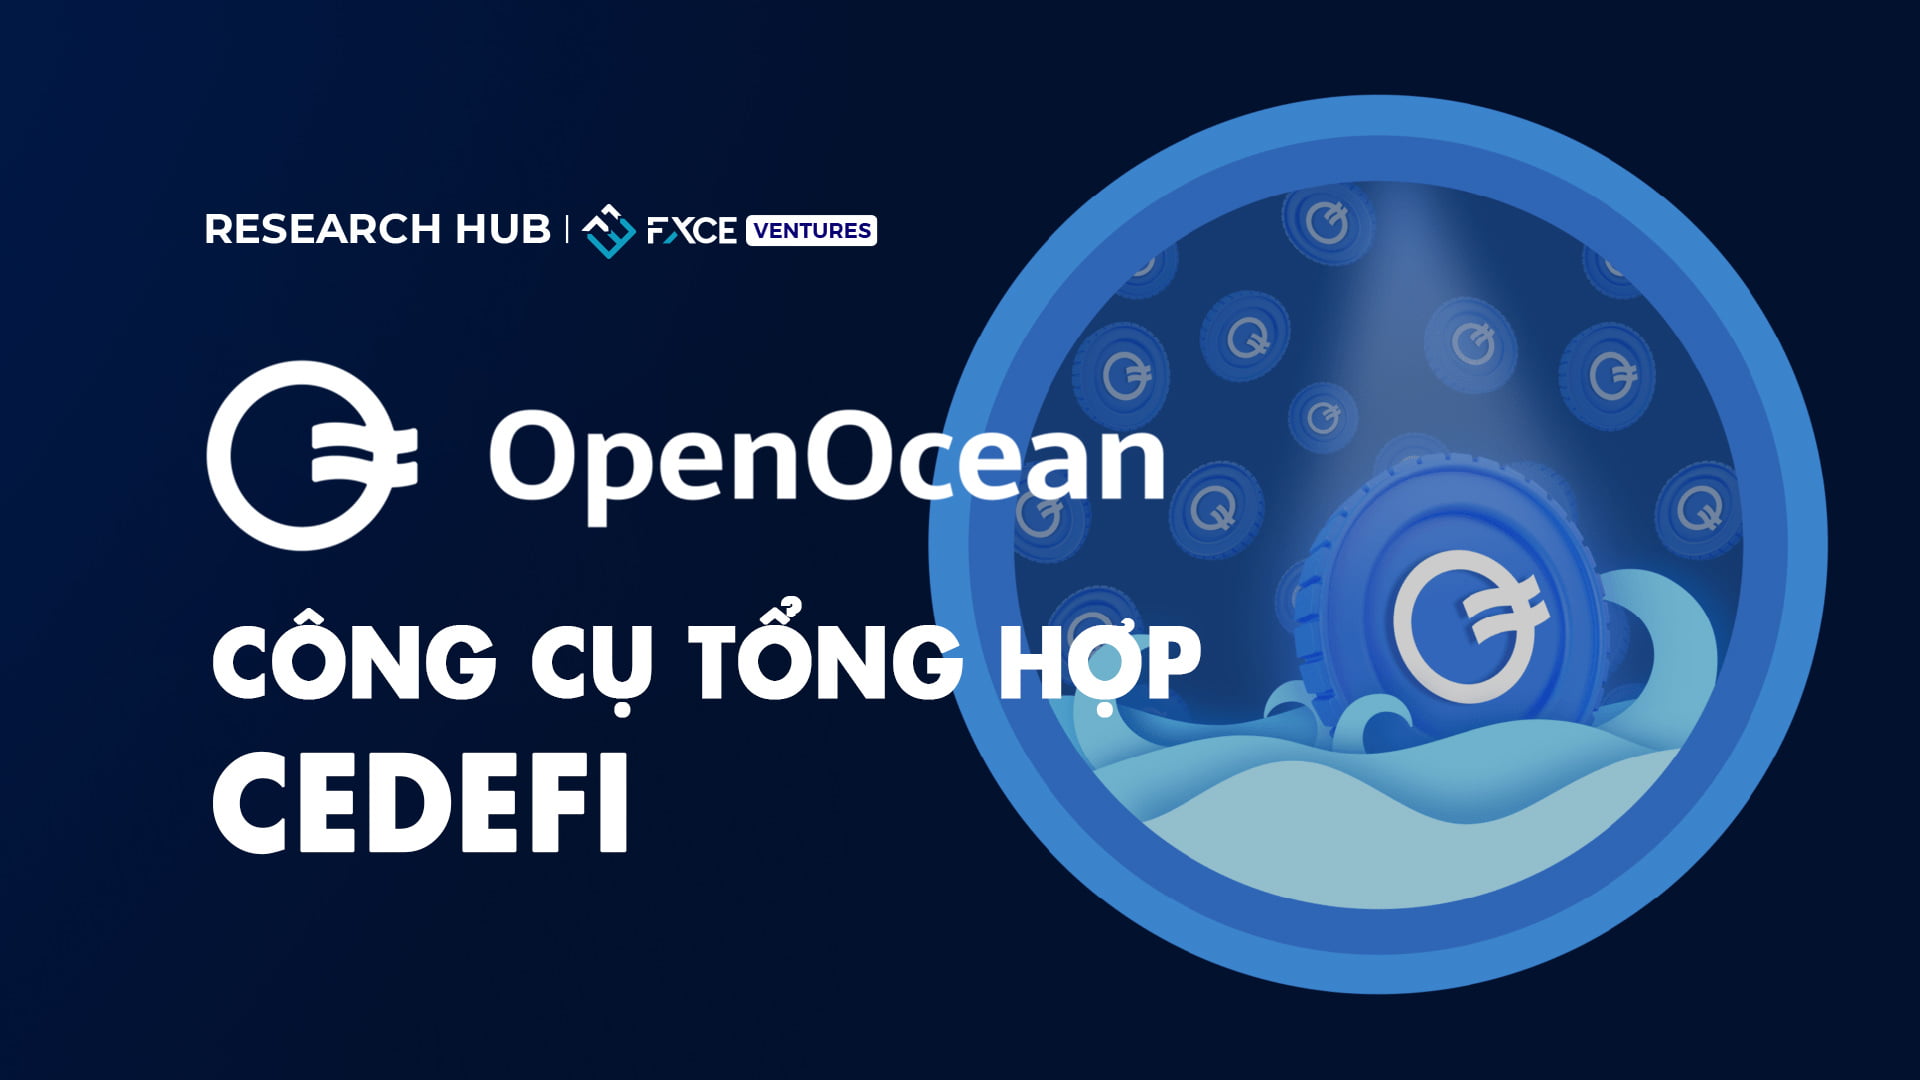 OpenOcean và hành trình trở thành công cụ tổng hợp CeDeFi